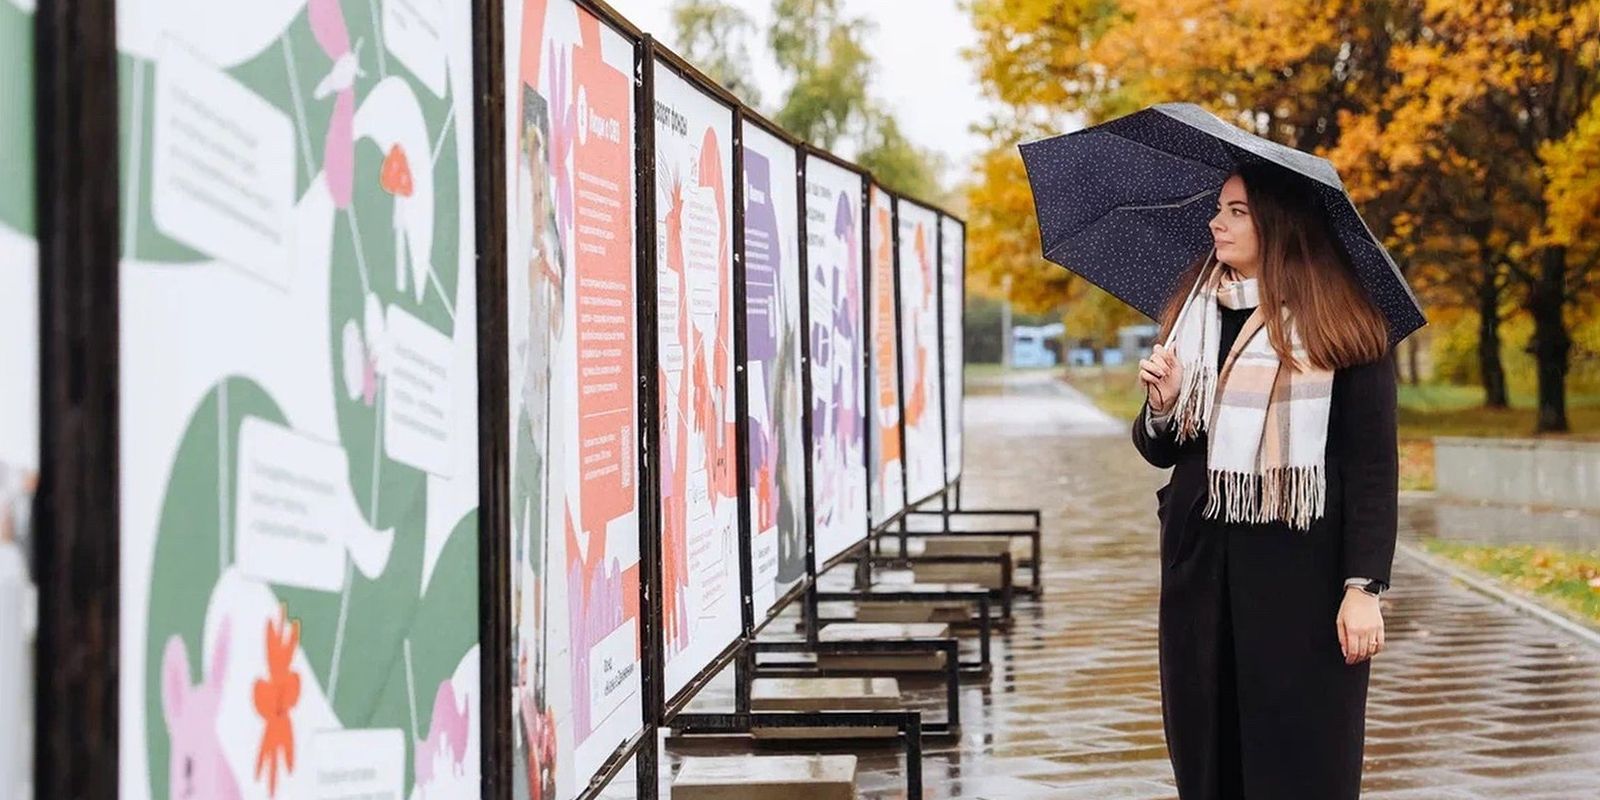 Путеводитель добрых дел, или Фотовыставка о благотворительном сервисе на mos.ru открылась в парке имени Юрия Лужкова